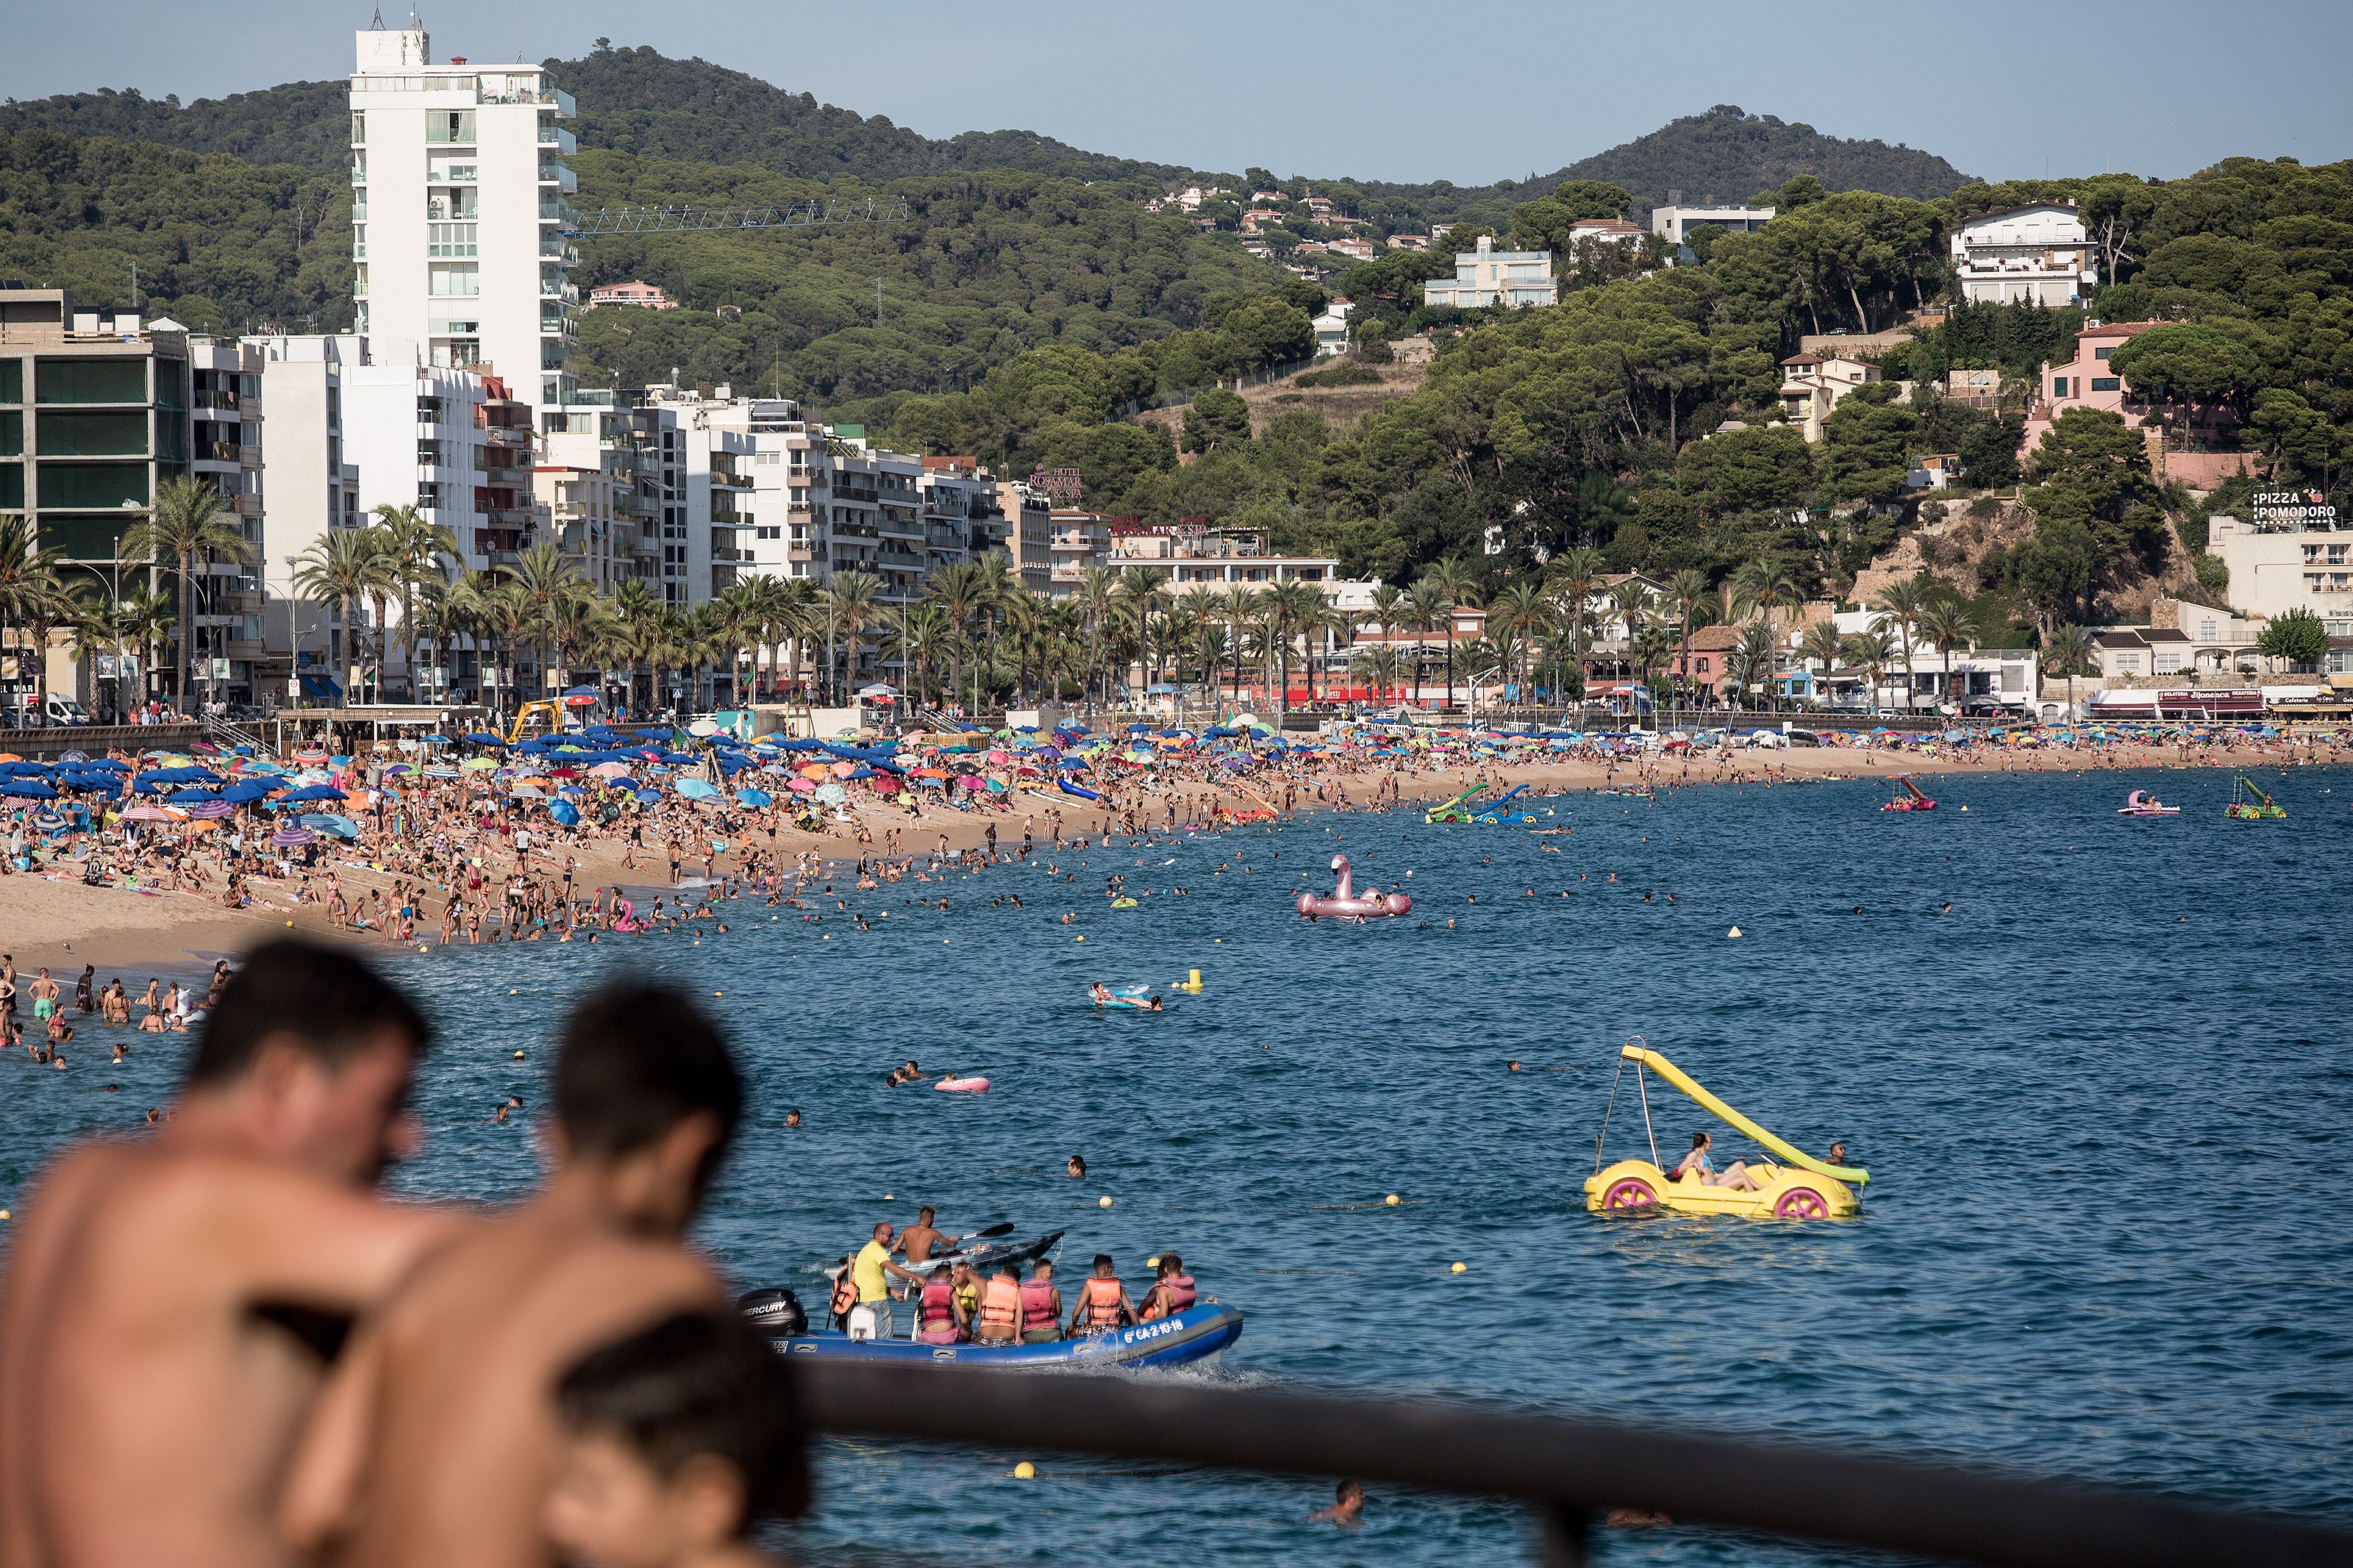 La quiebra de Thomas Cook costará "al menos 10 millones de euros" al turismo catalán